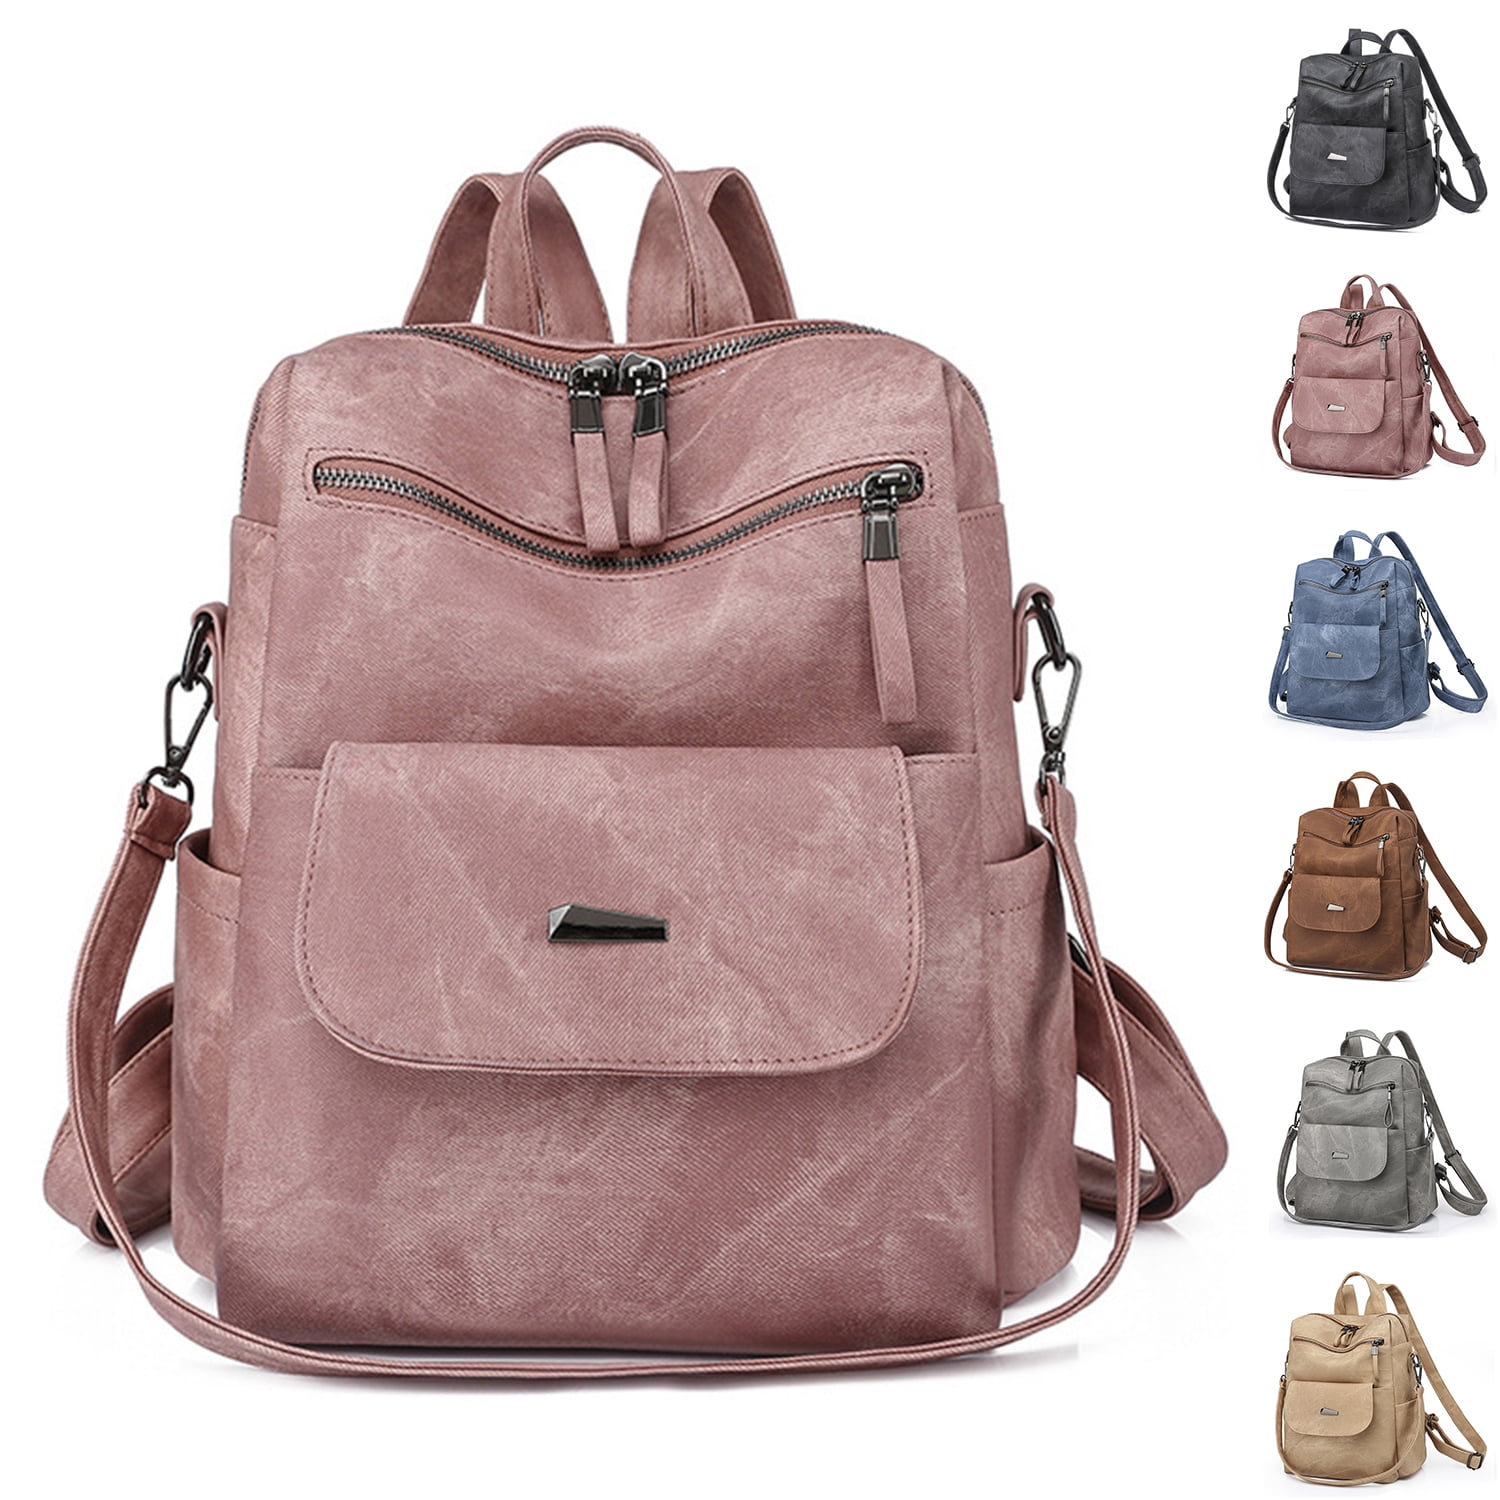 KAIASHA new Mini Backpack Girls Cute Small Backpack Purse Women Travel 1 L  Backpack BLACK - Price in India | Flipkart.com